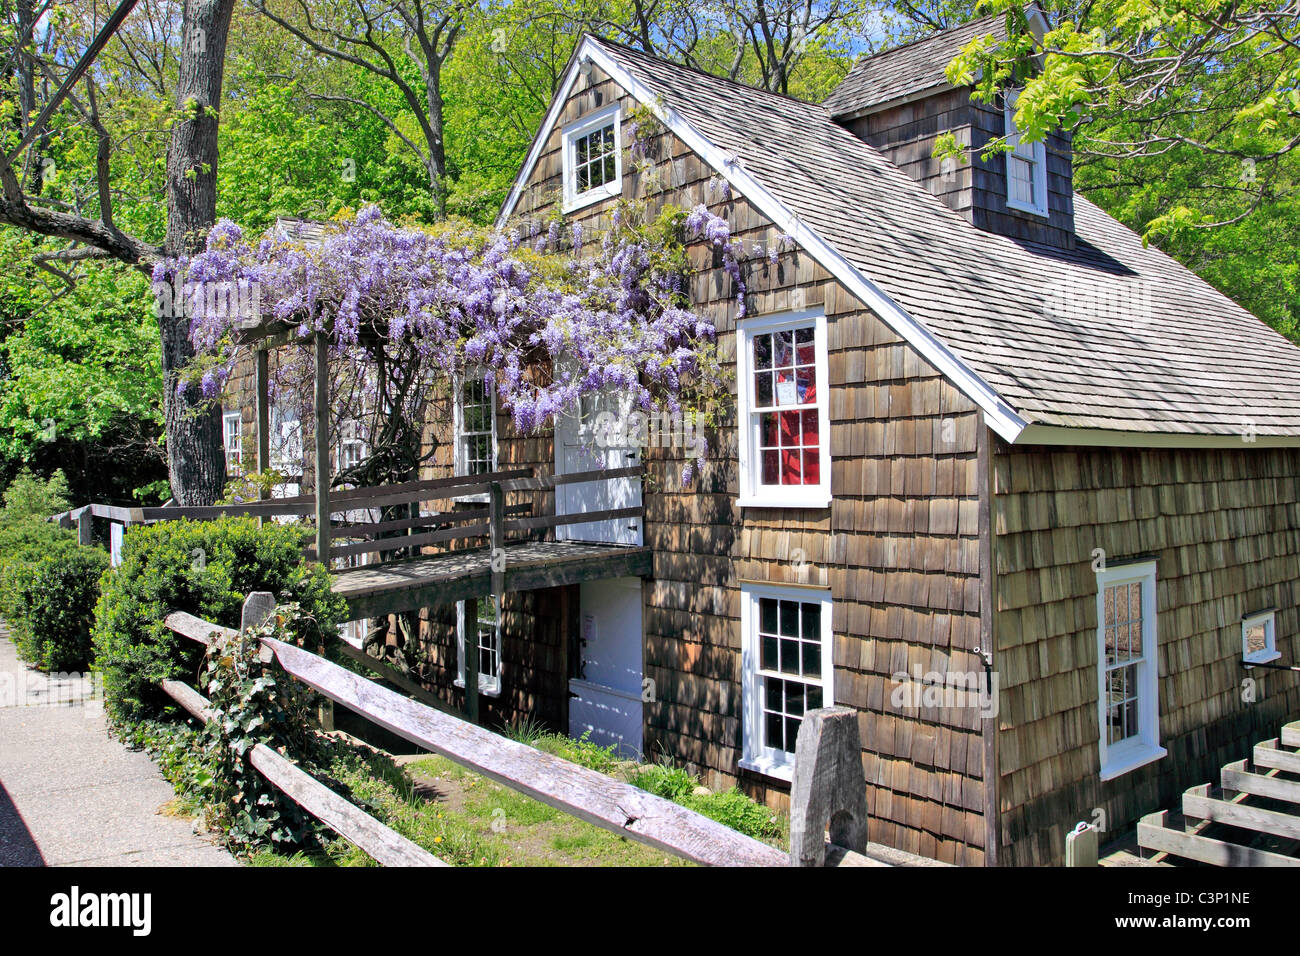 The historic Stony Brook Grist Mill, Long Island, NY Stock Photo